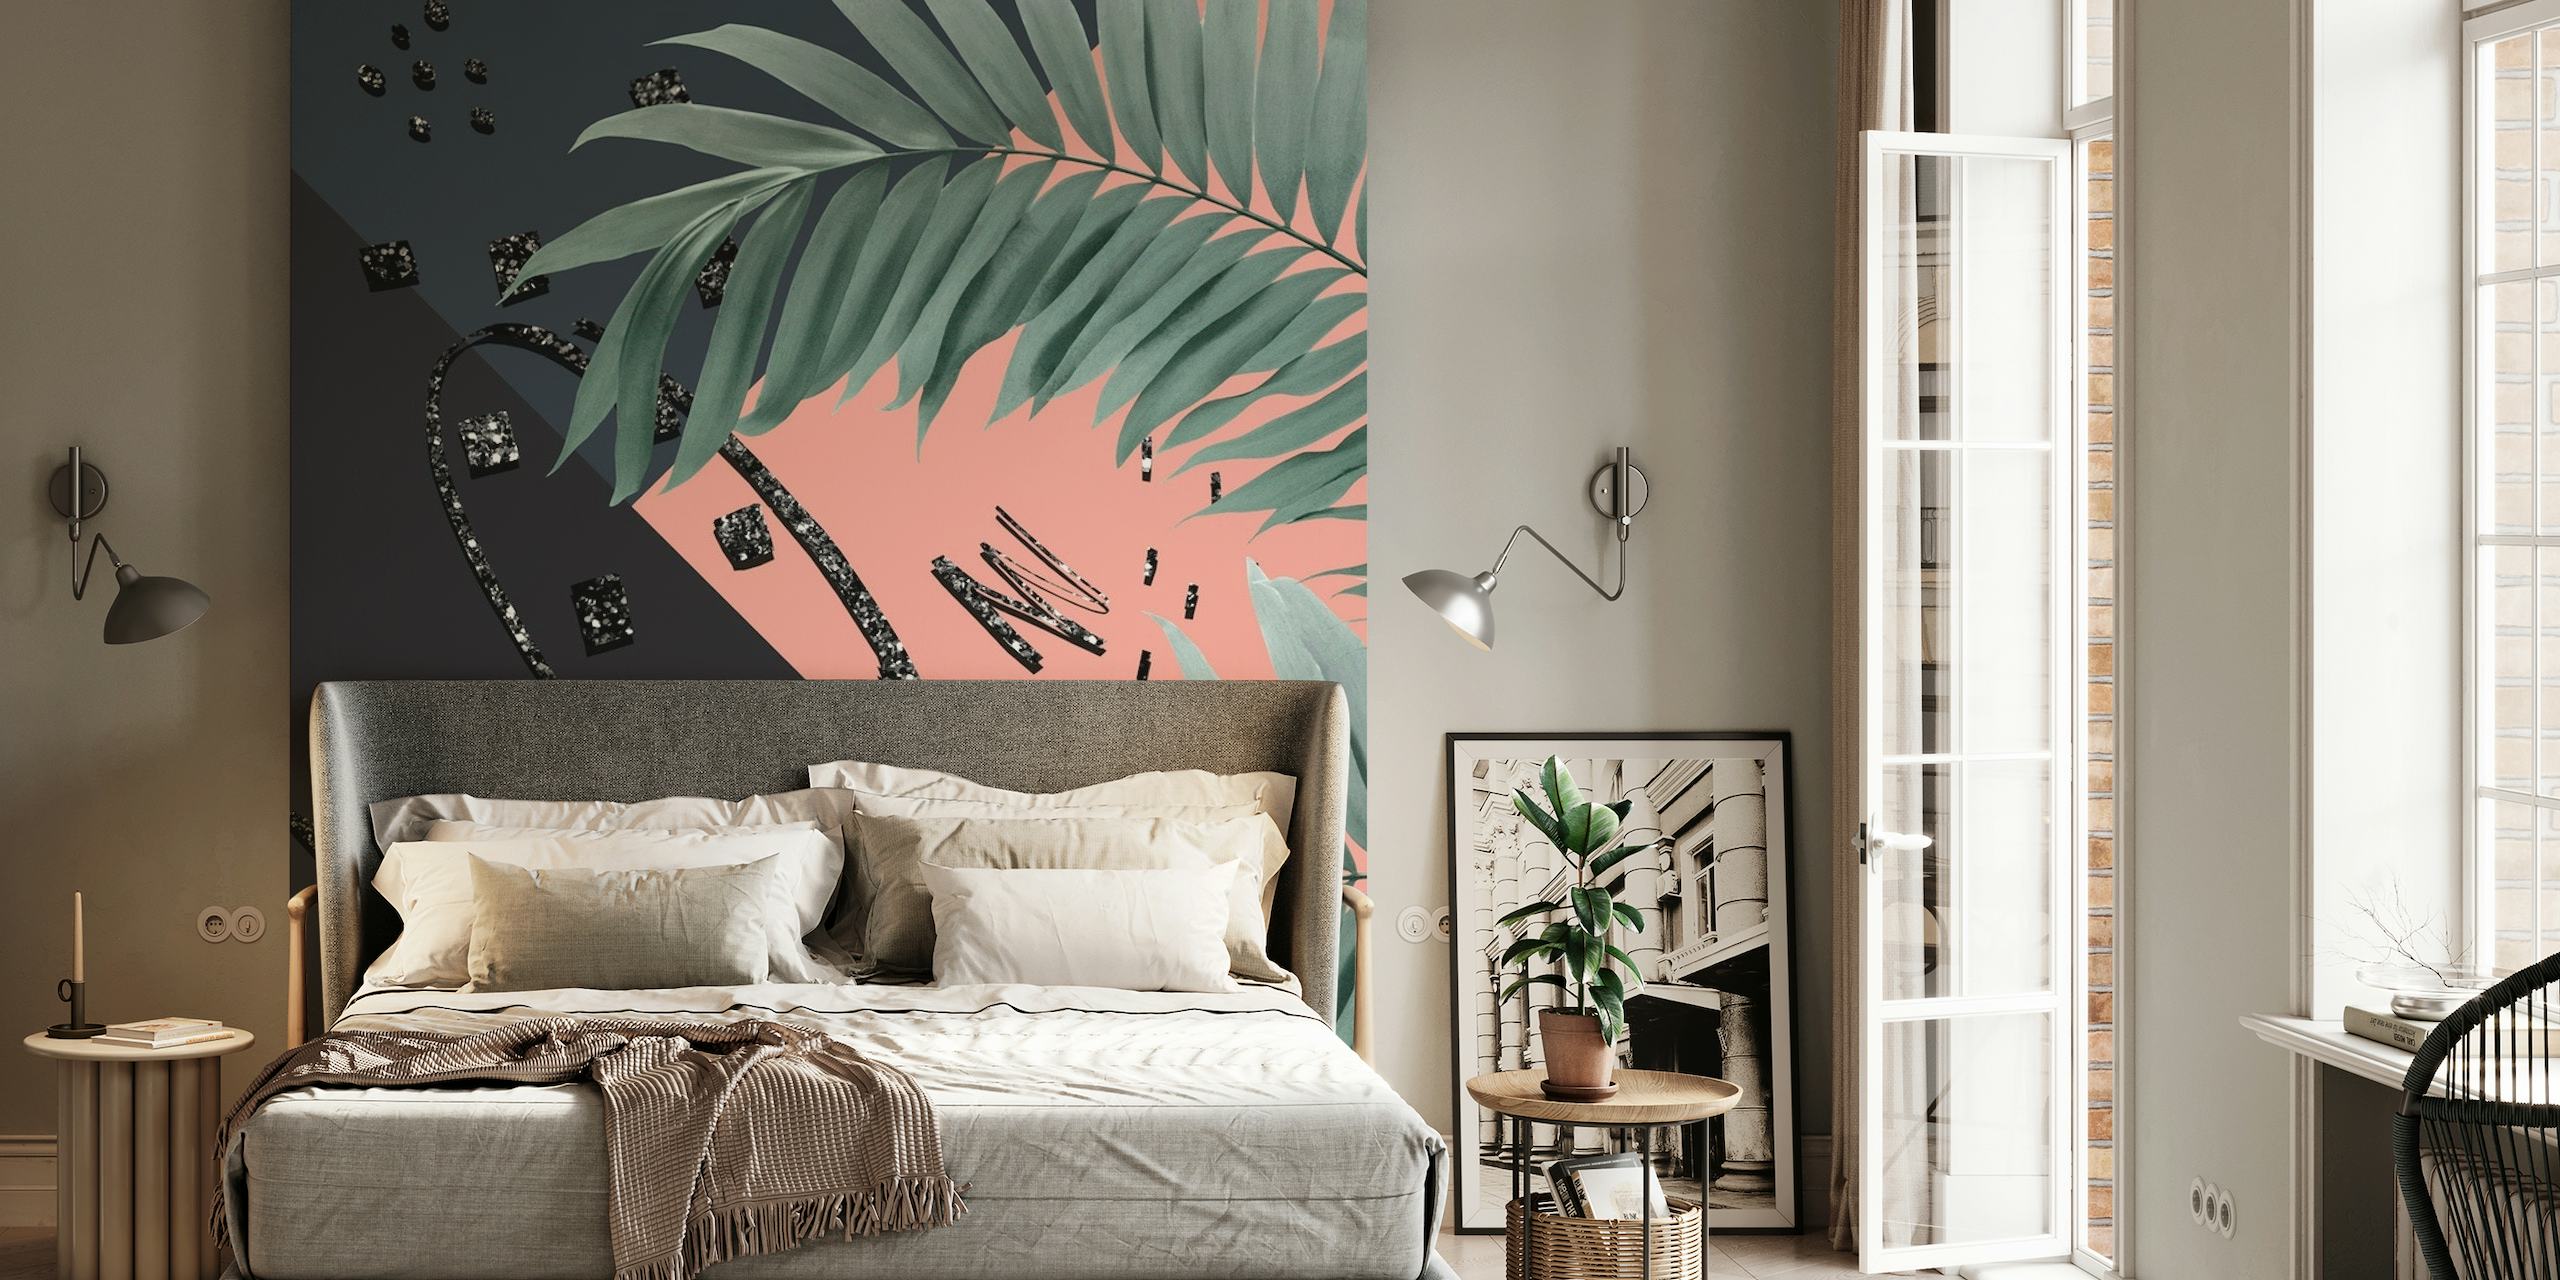 Decorazione murale con foglie di palma tropicali con accenti glitter su una parete con sfondo scuro